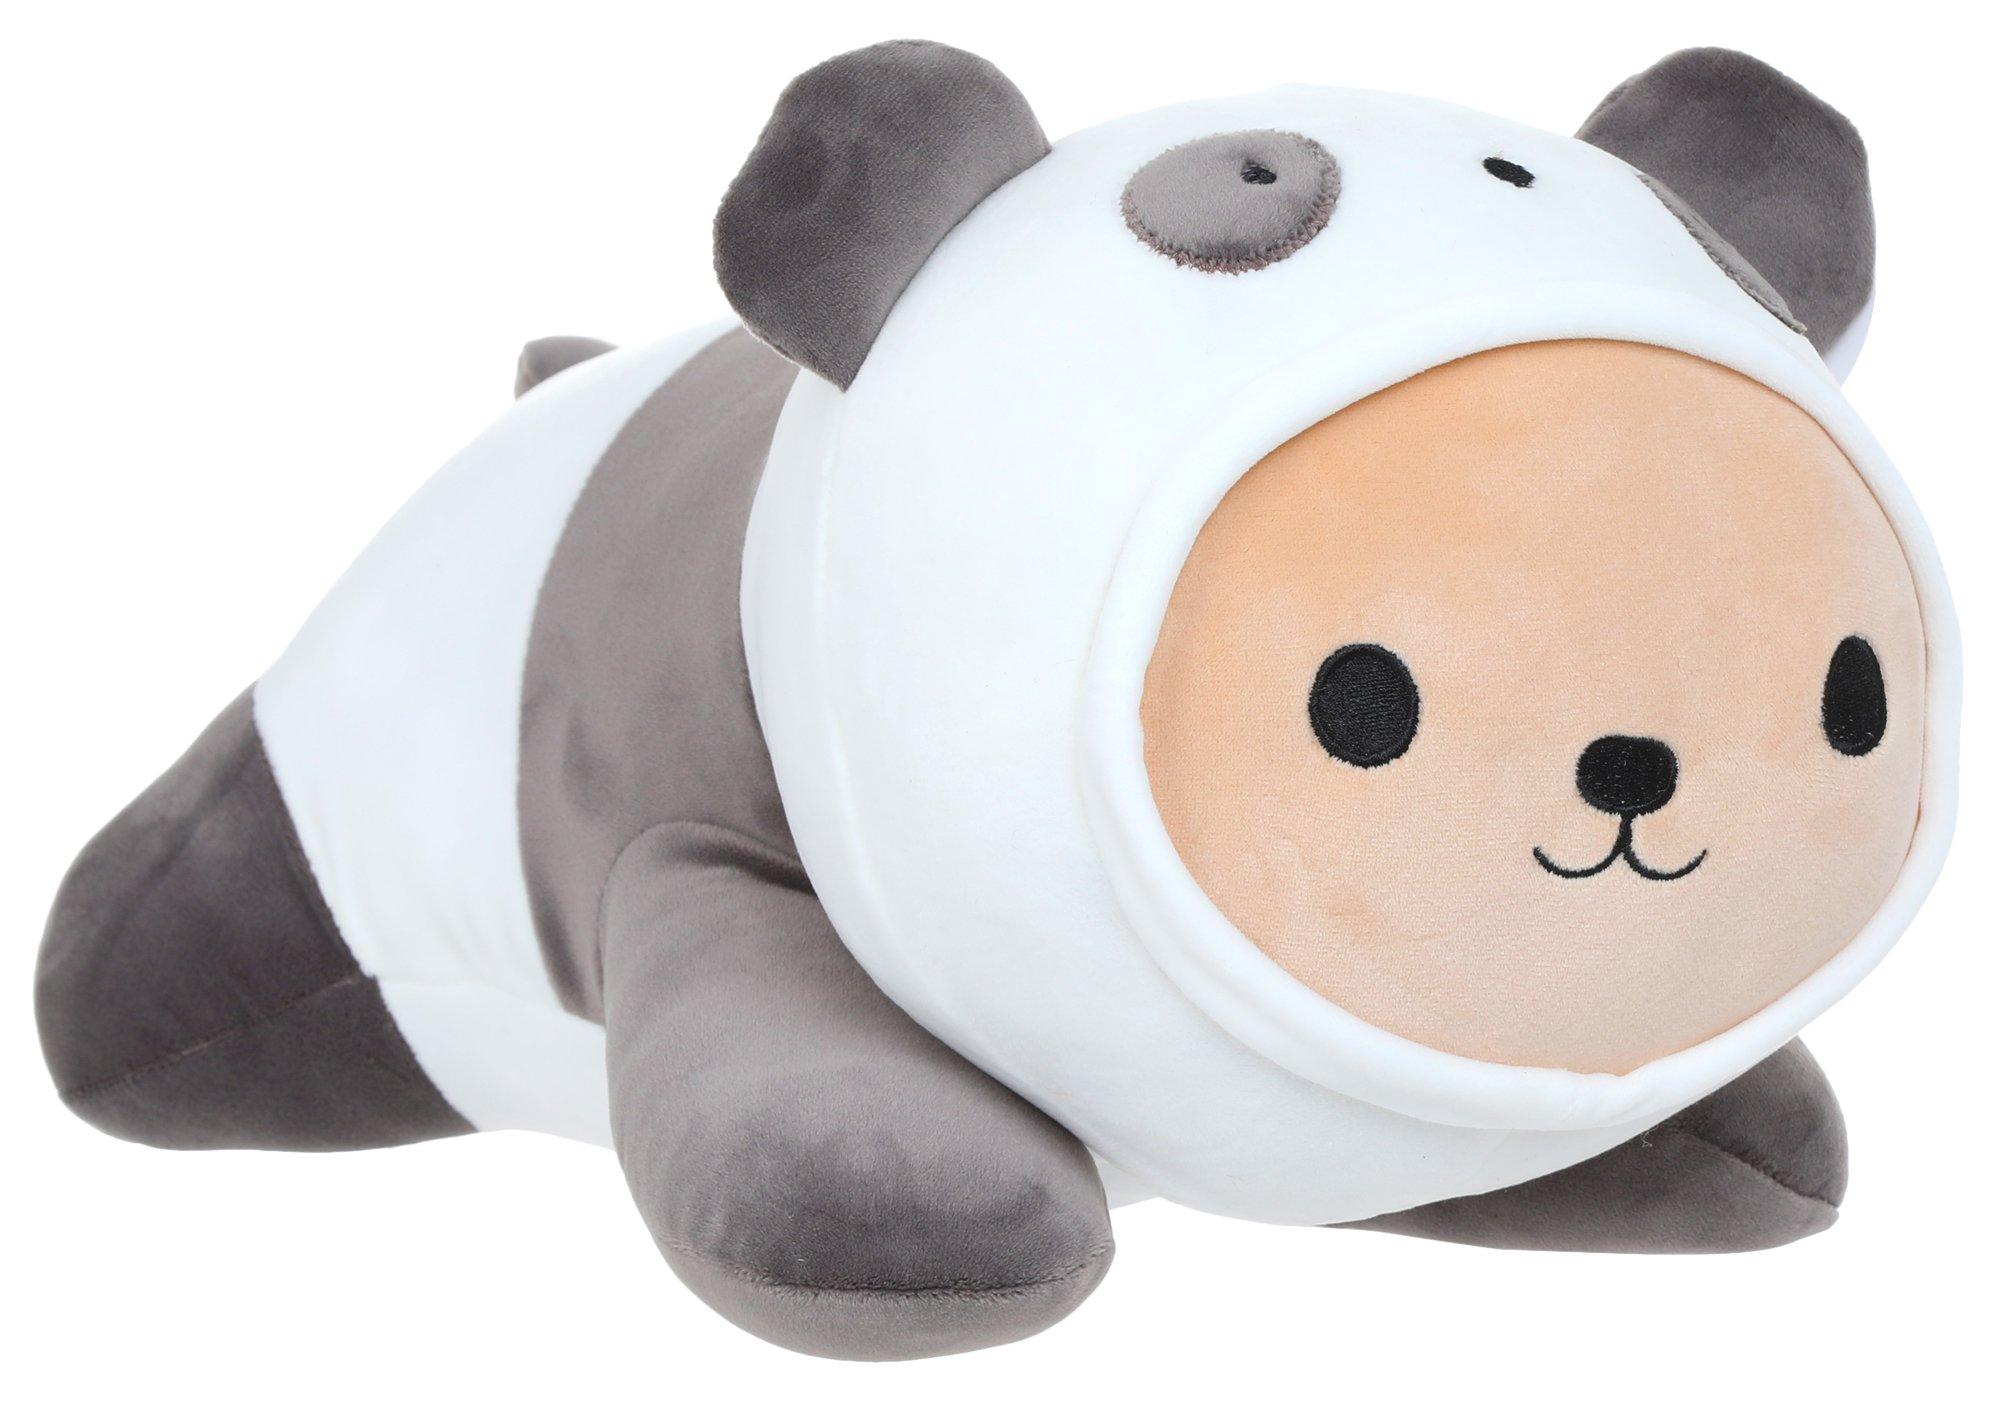 Kids Plush Panda Stuffed Animal